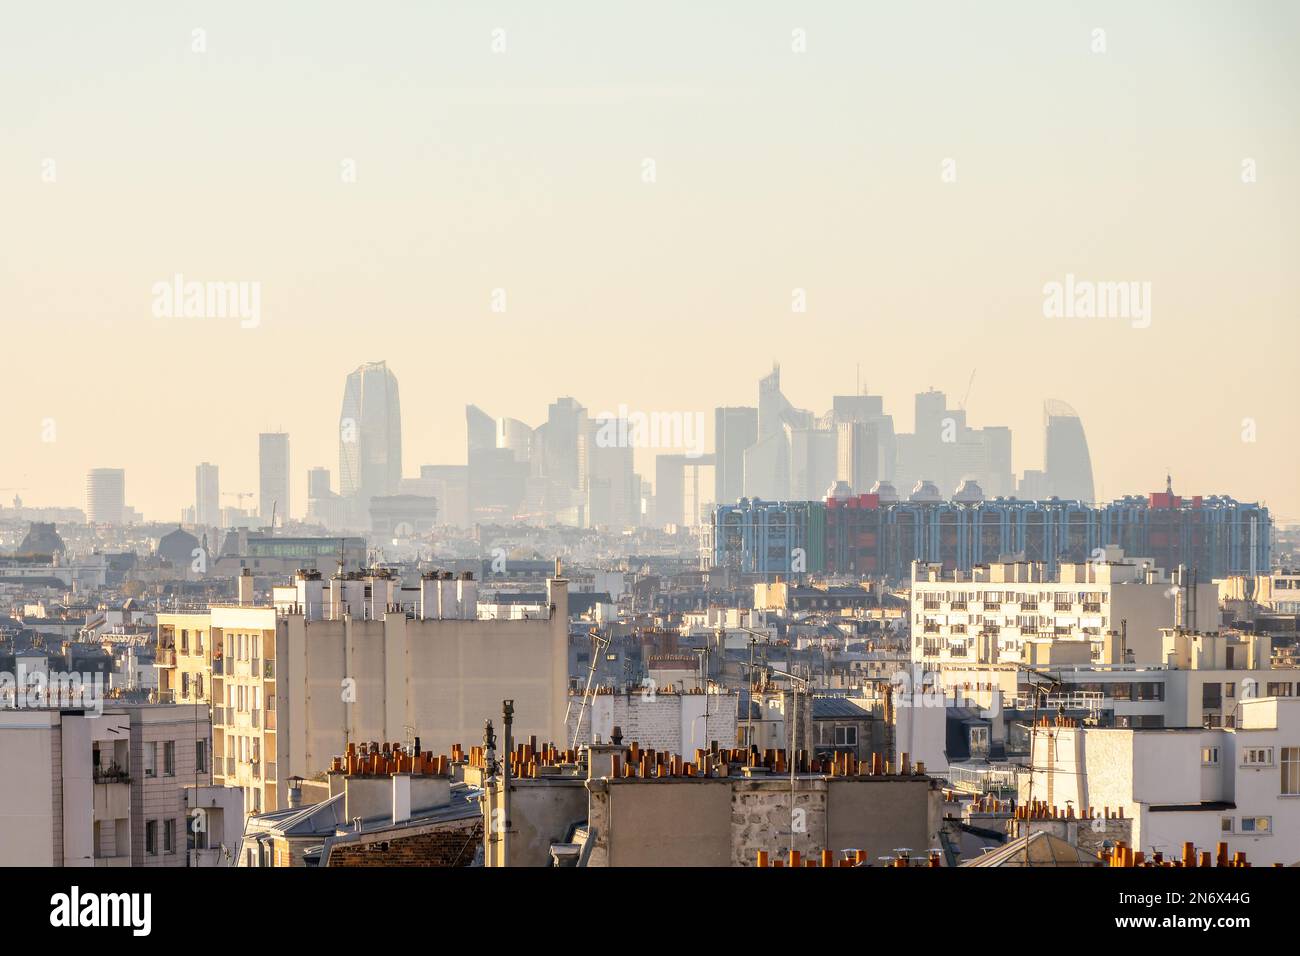 Luftaufnahme von Paris, Frankreich, Skyline des Geschäftsviertels La Défense mit modernen Gebäuden und Türmen im Hintergrund Stockfoto